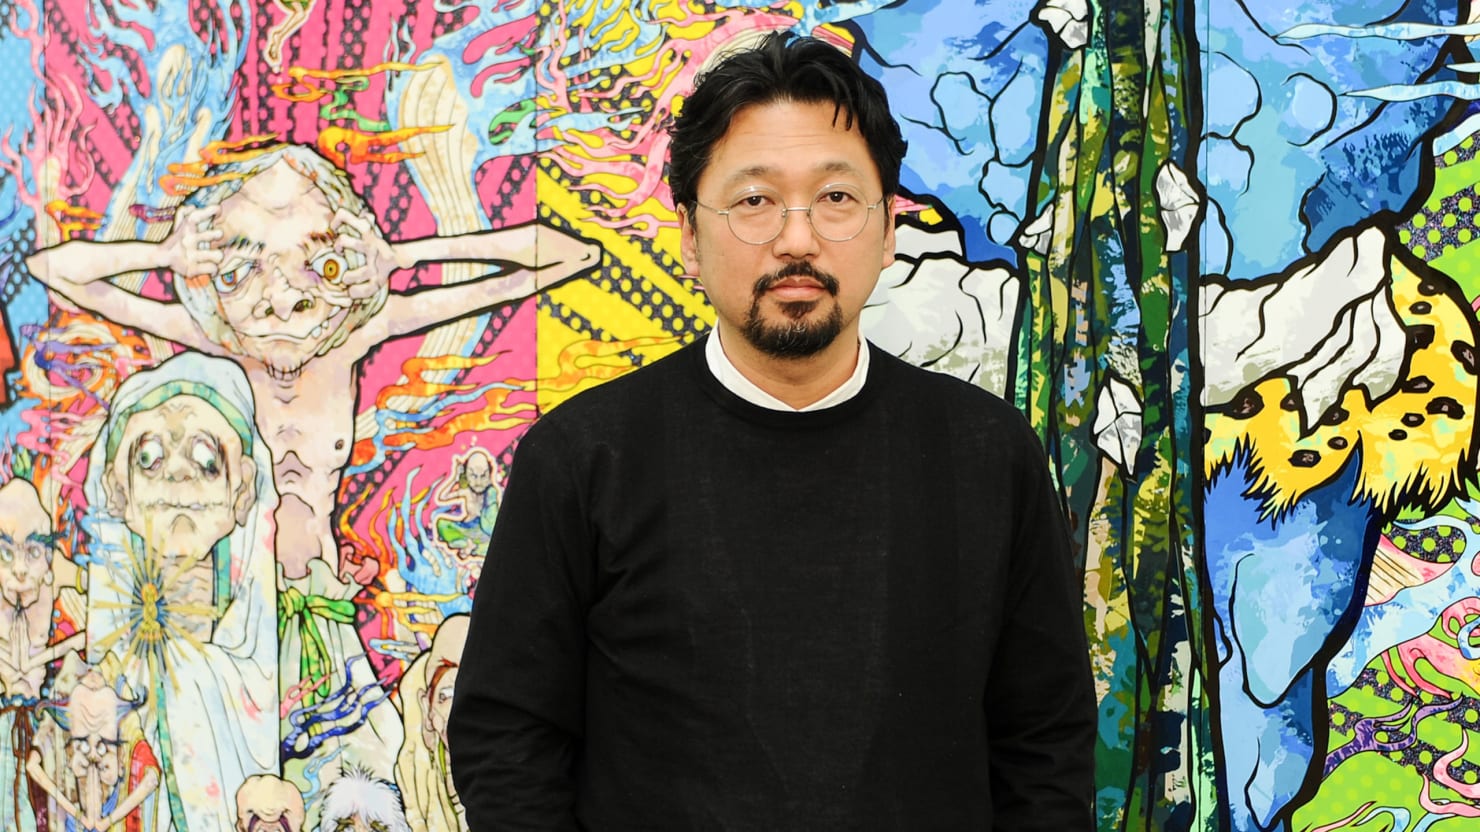 Takashi Murakami's Art From Disaster